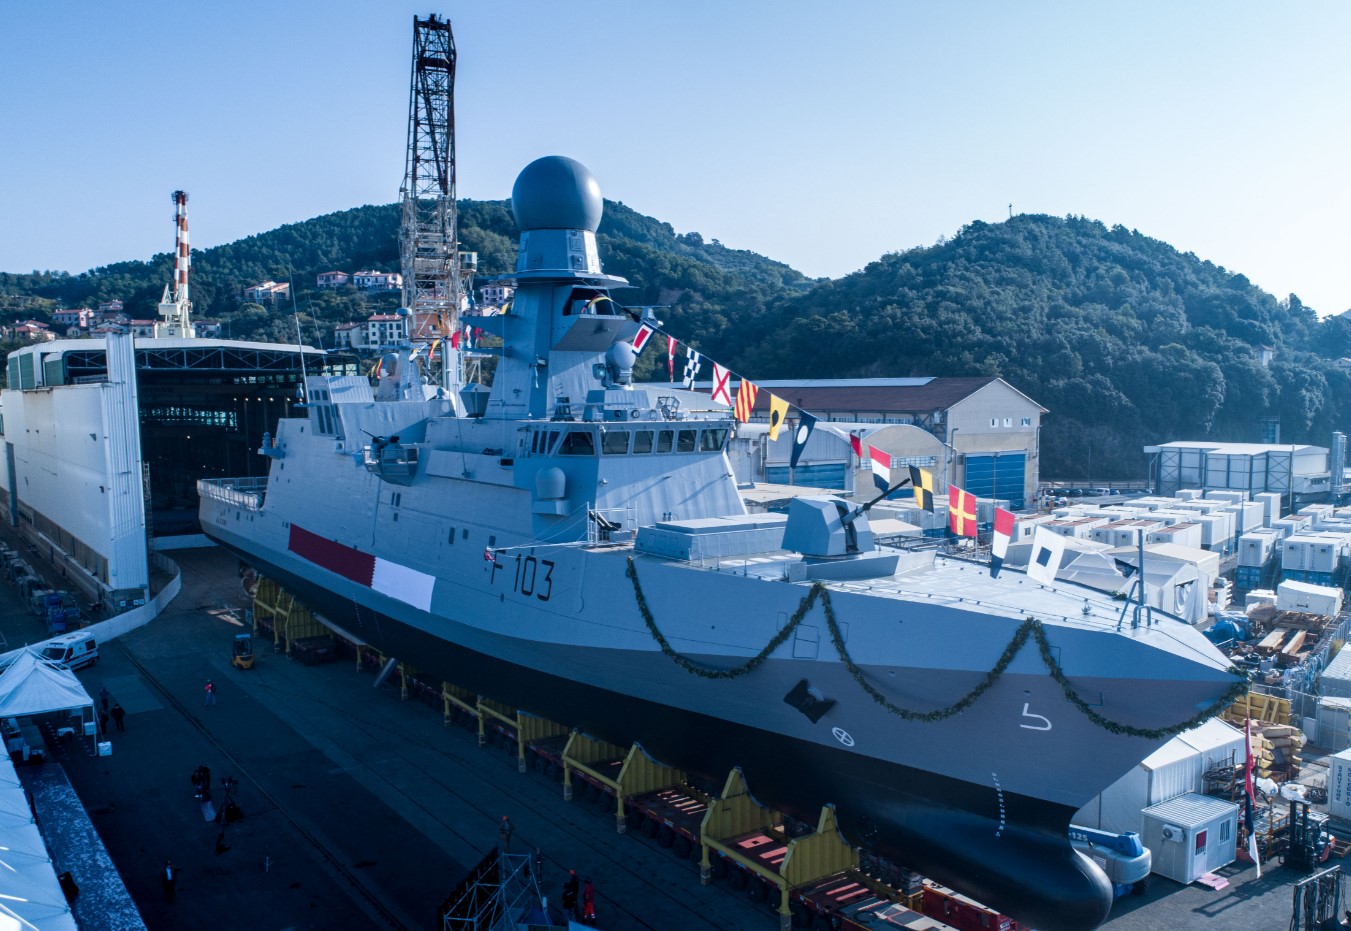 Una delle corvette classe "Al-Zubarah" il giorno del varo presso il cantiere navale di Muggiano (La Spezia). Le navi sono prodotte dall'italiana Leonardo per la Marina del Qatar.